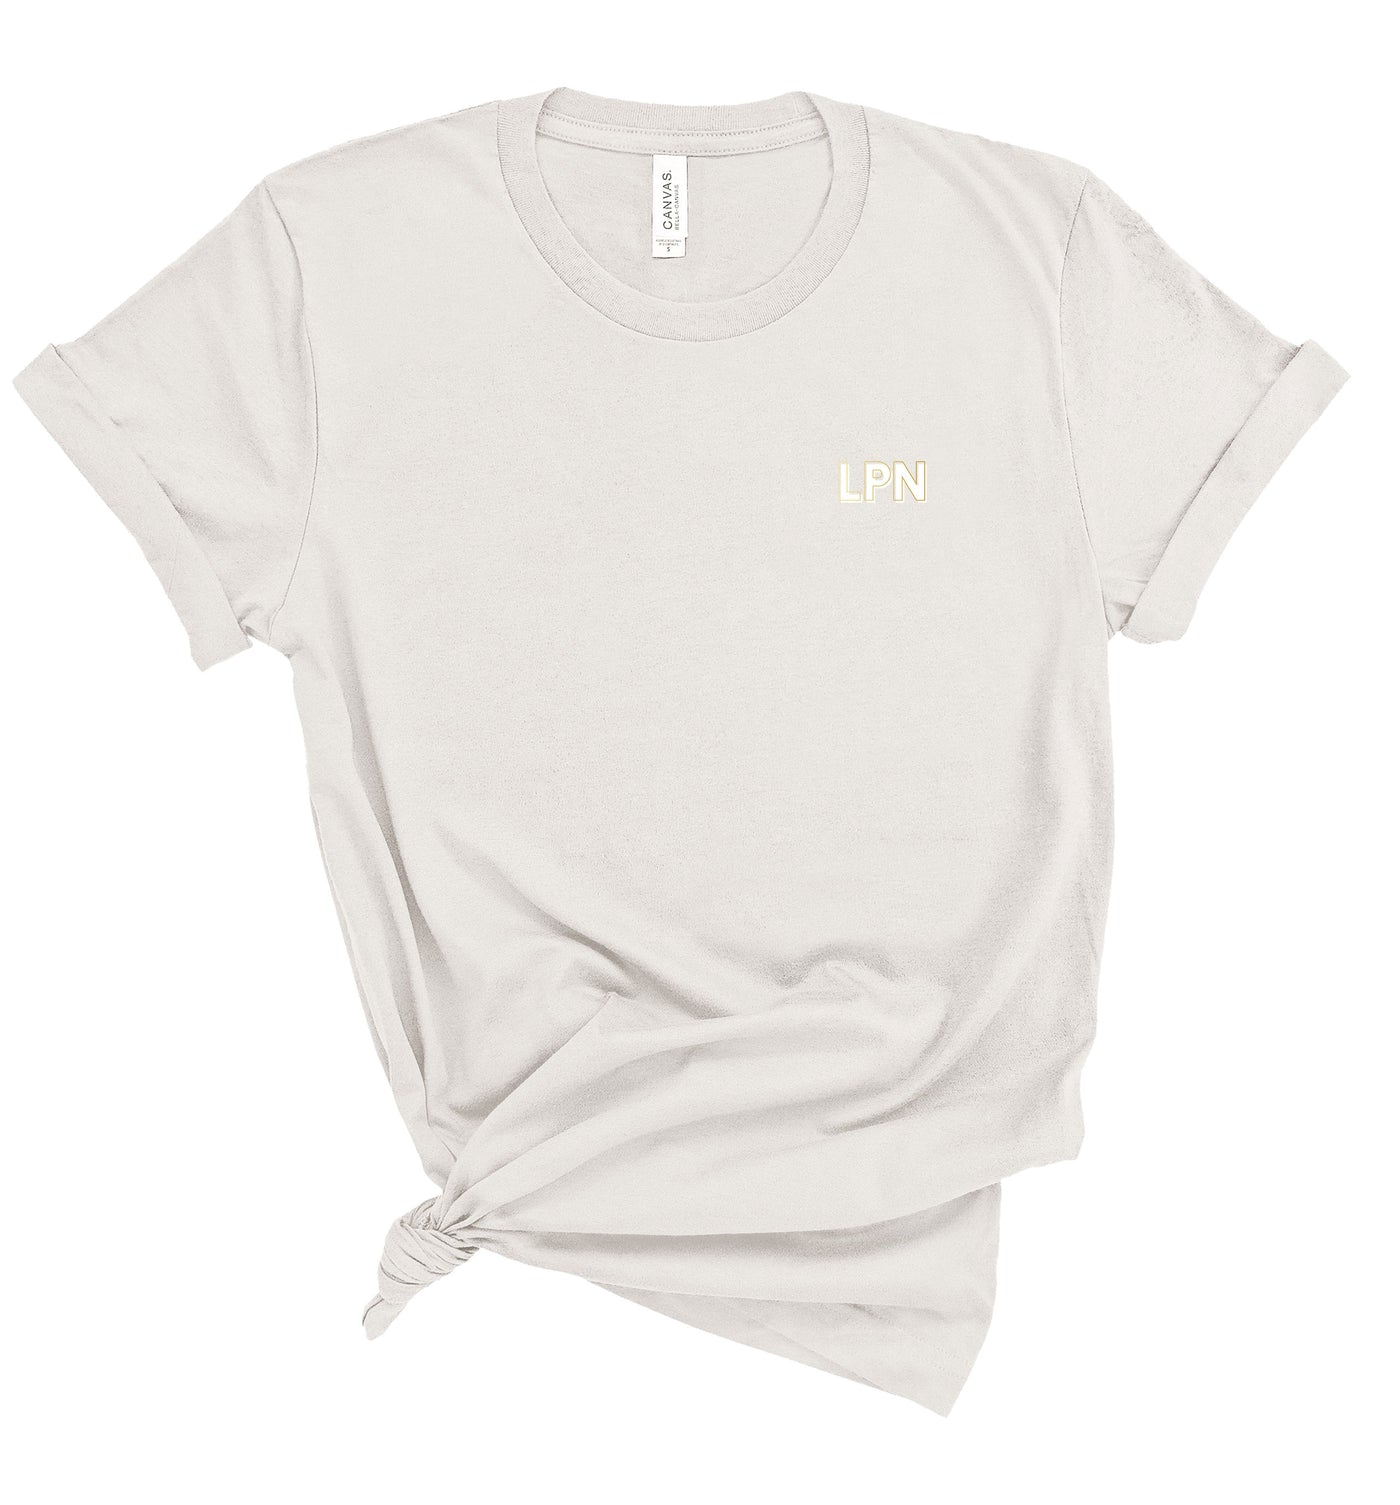 LPN Creds - Shirt